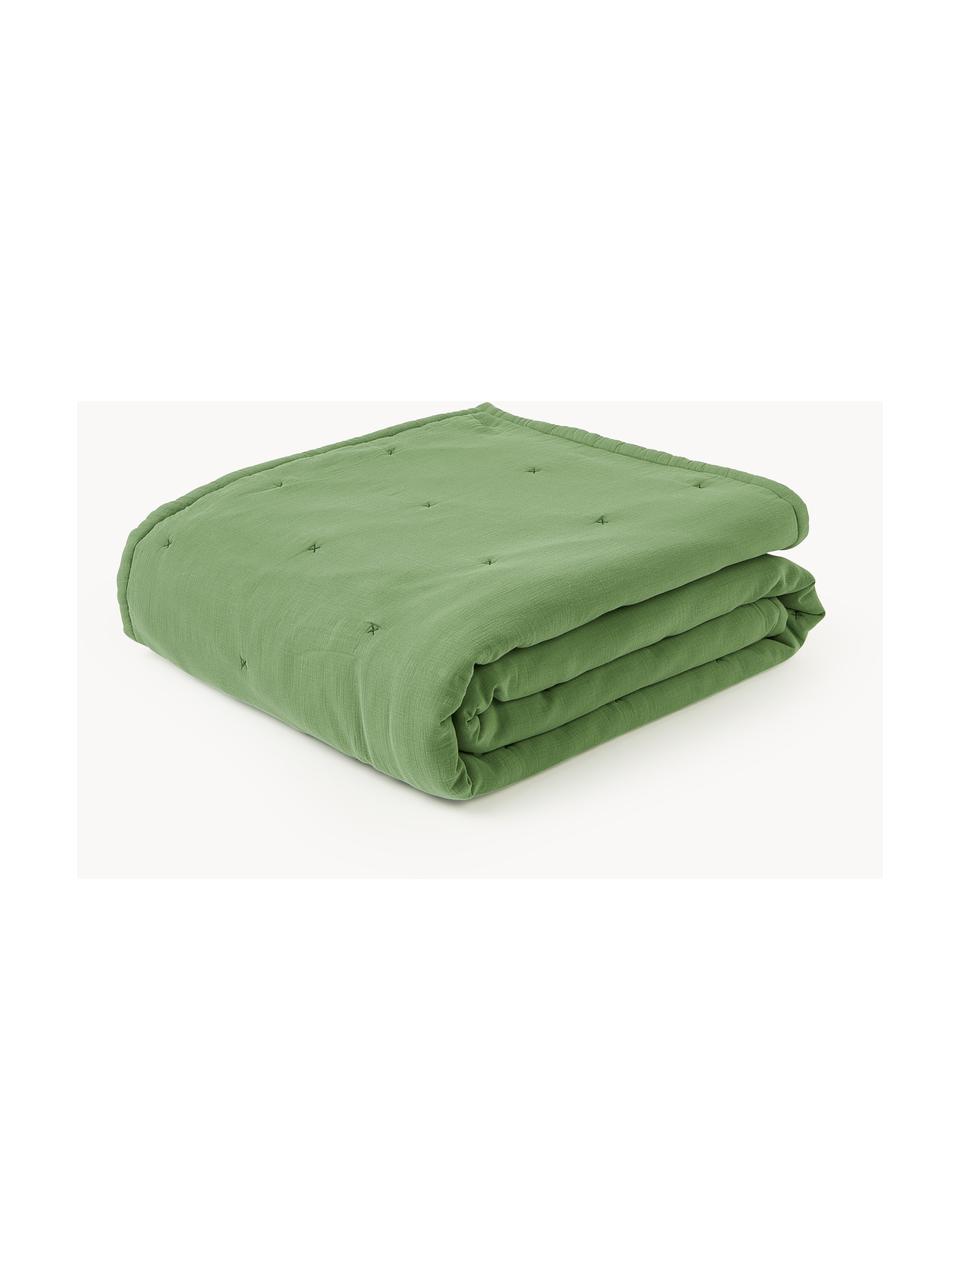 Gewatteerde bedsprei Lenore van katoen, Bekleding: 100% katoen, Groen, B 230 x L 250 cm (voor bedden tot 180 x 200 cm)